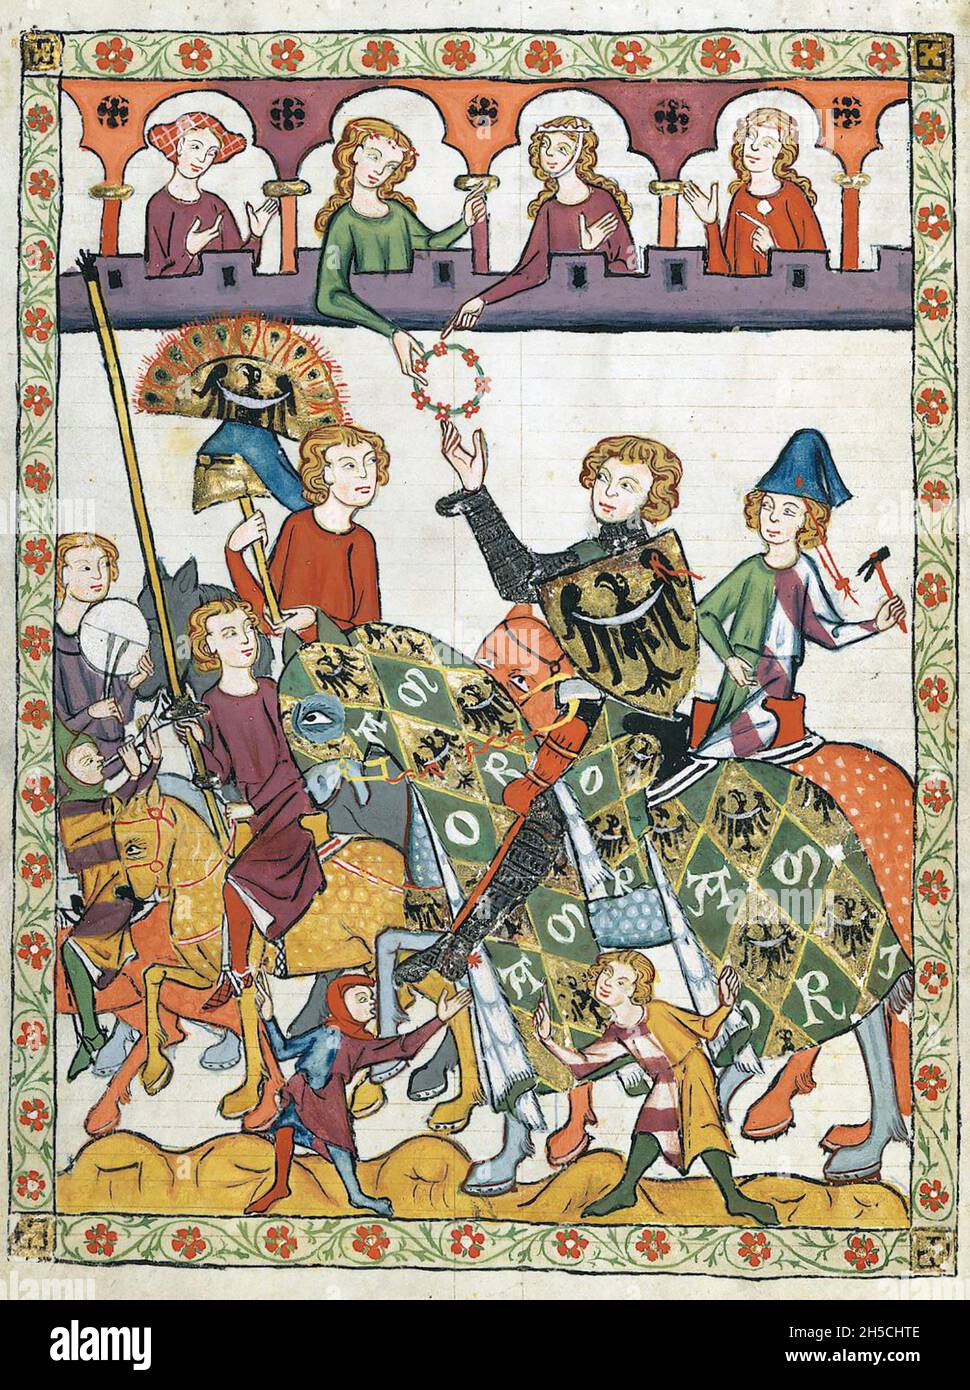 CODEX MANESSE un manoscritto tedesco del XIV secolo, che contiene canzoni e illustra la vita medievale.A cavaliere riceve un favore da una delle Signore di corte in un torneo. Foto Stock